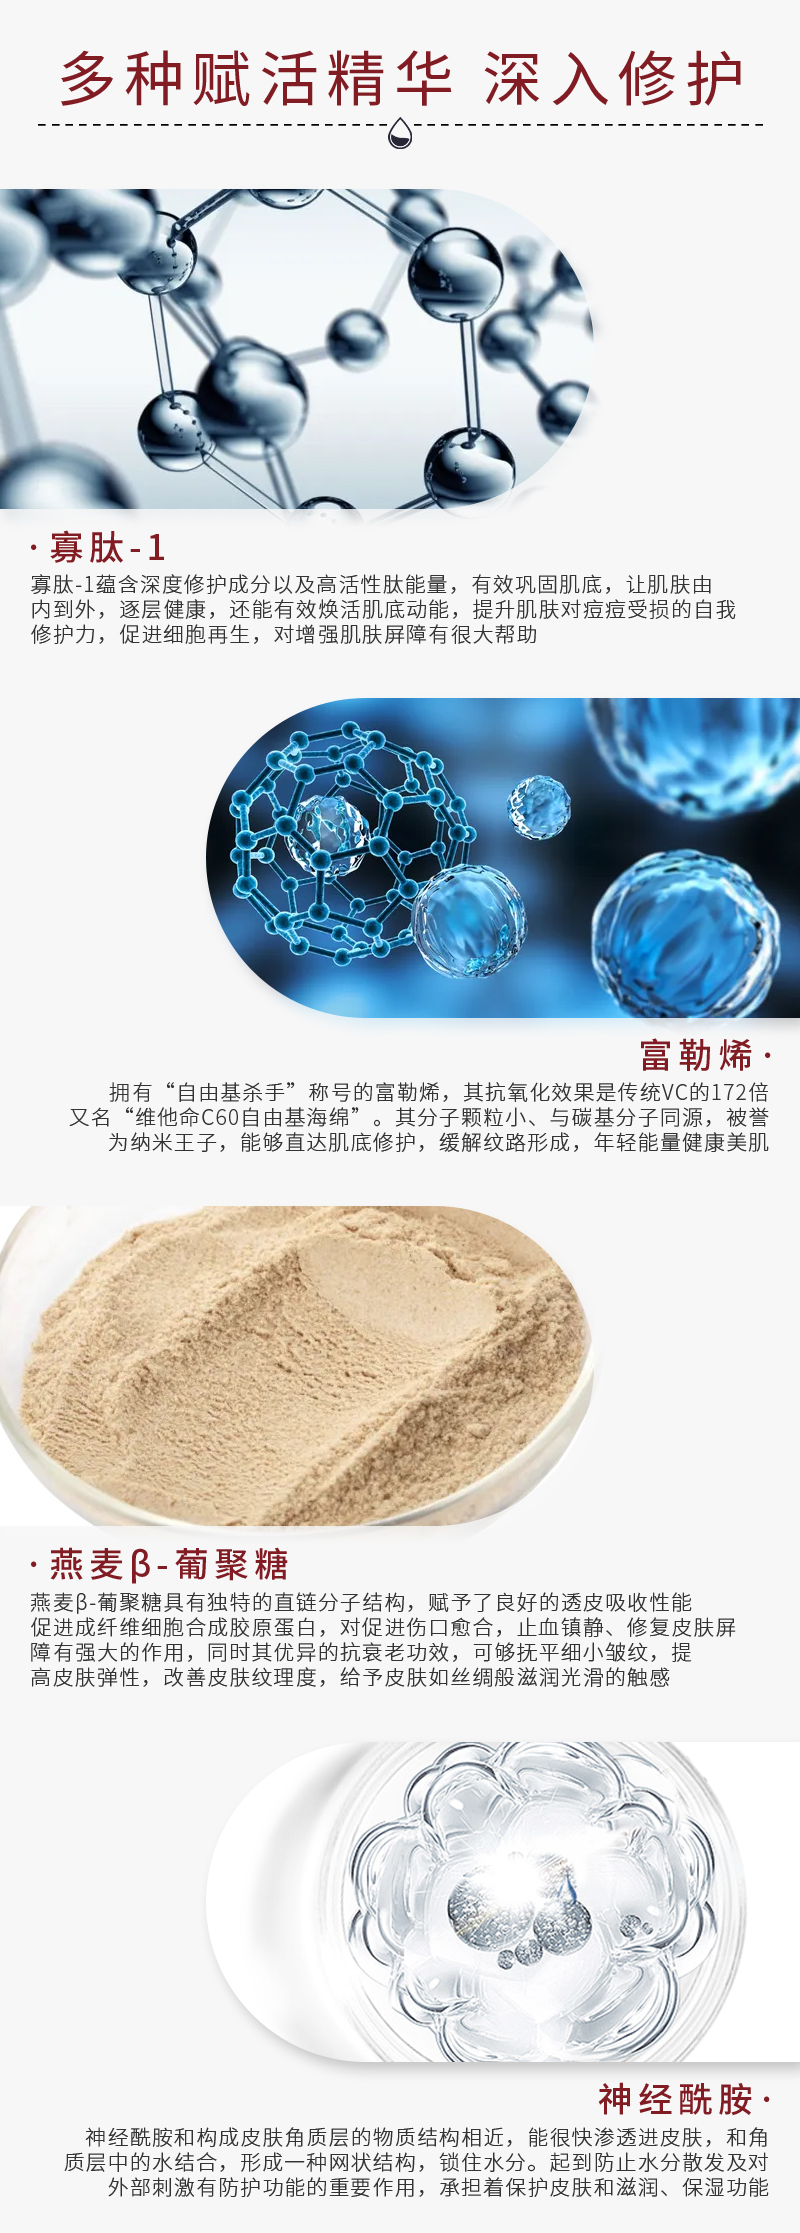 Therapeel Xiu Muning gefriergetrocknetes Pulver: -5